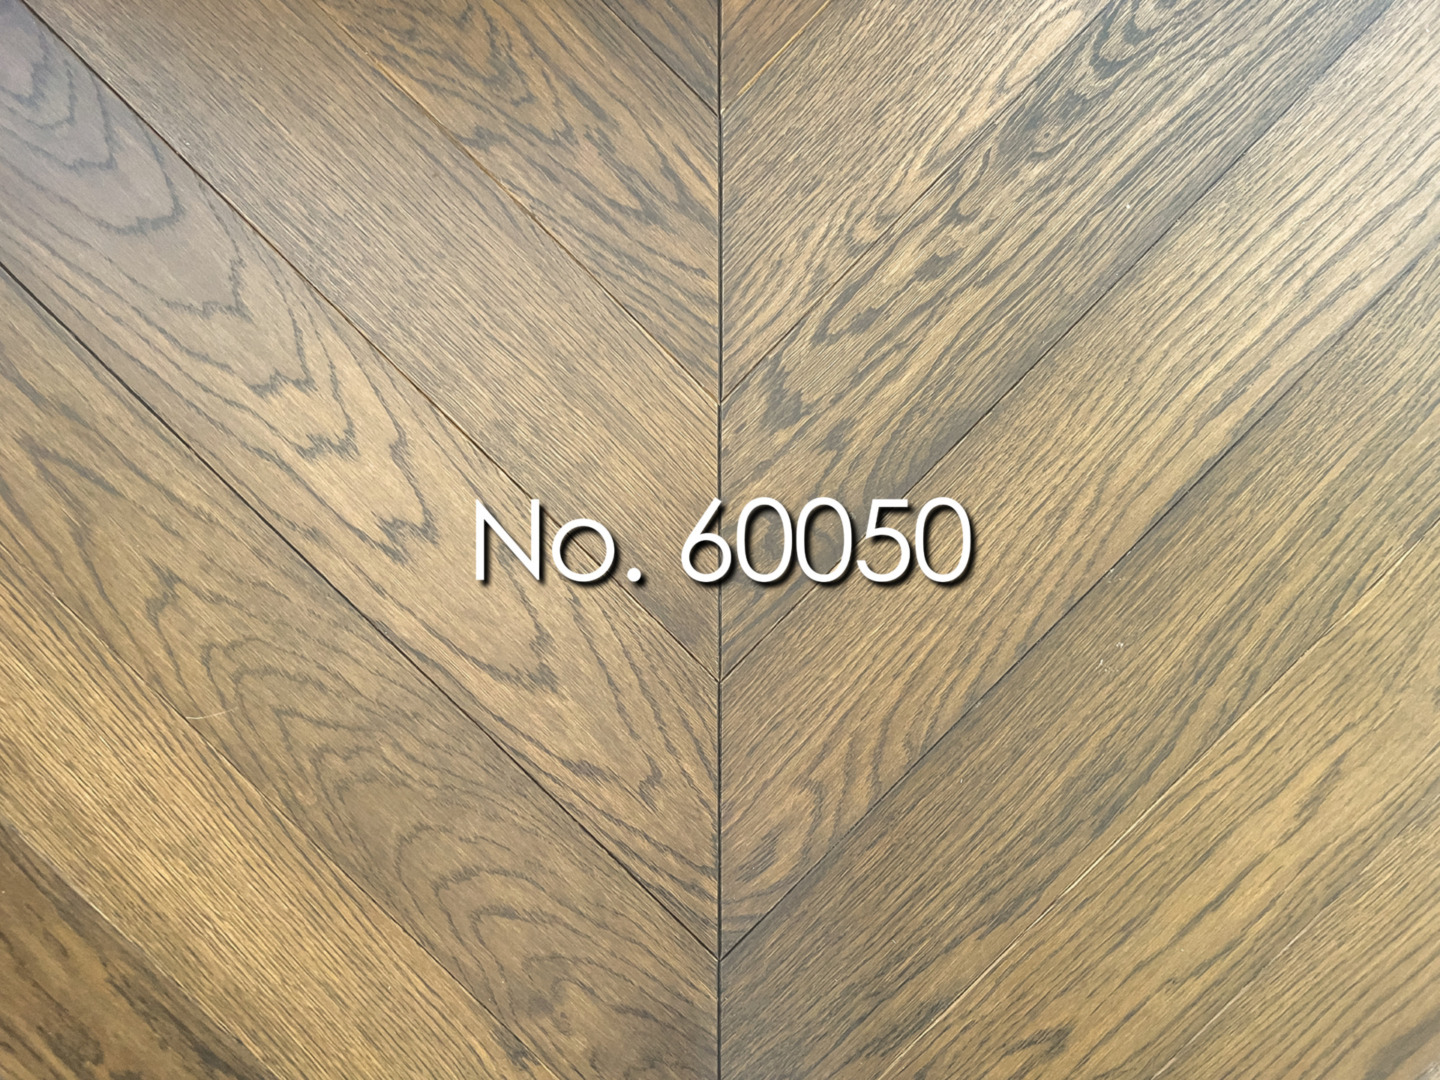 No. 60050